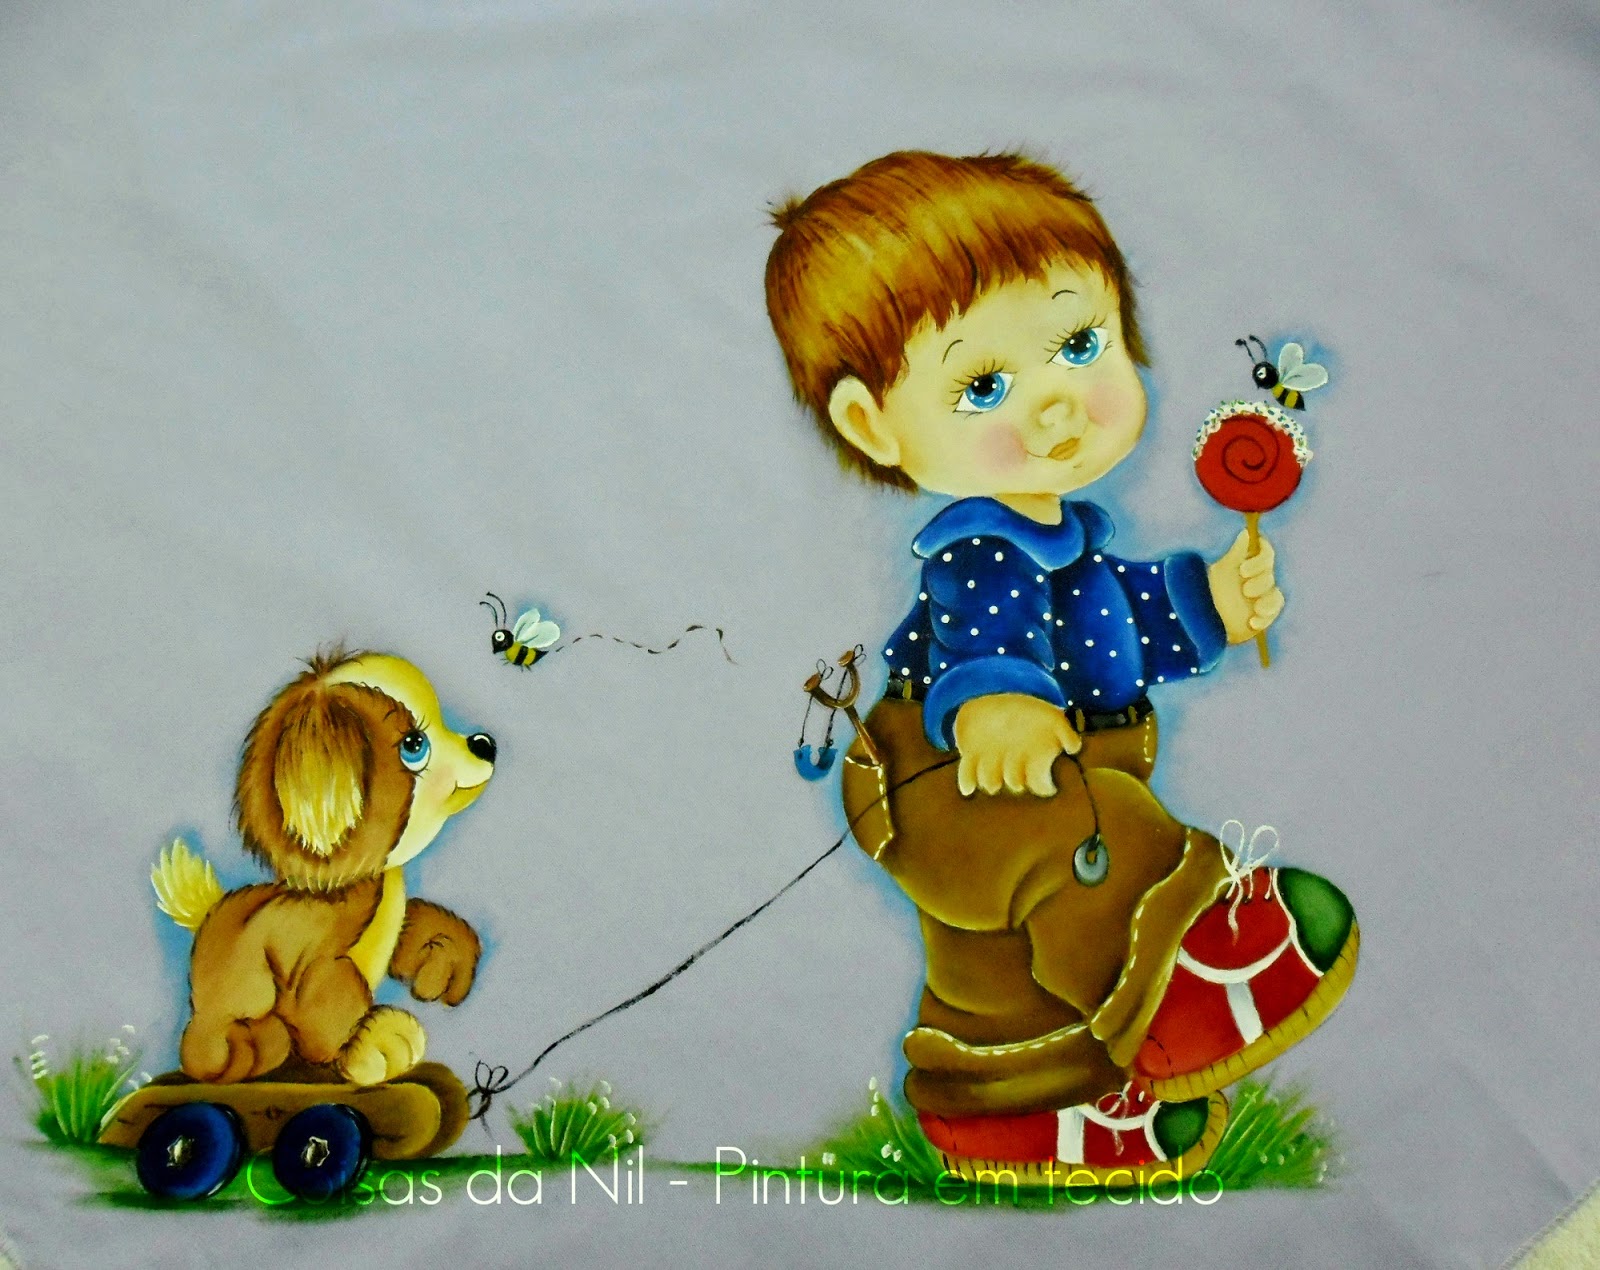 pintura em tecido manta com menino chupando pirulito enquanto puxa carrinho com cachorro